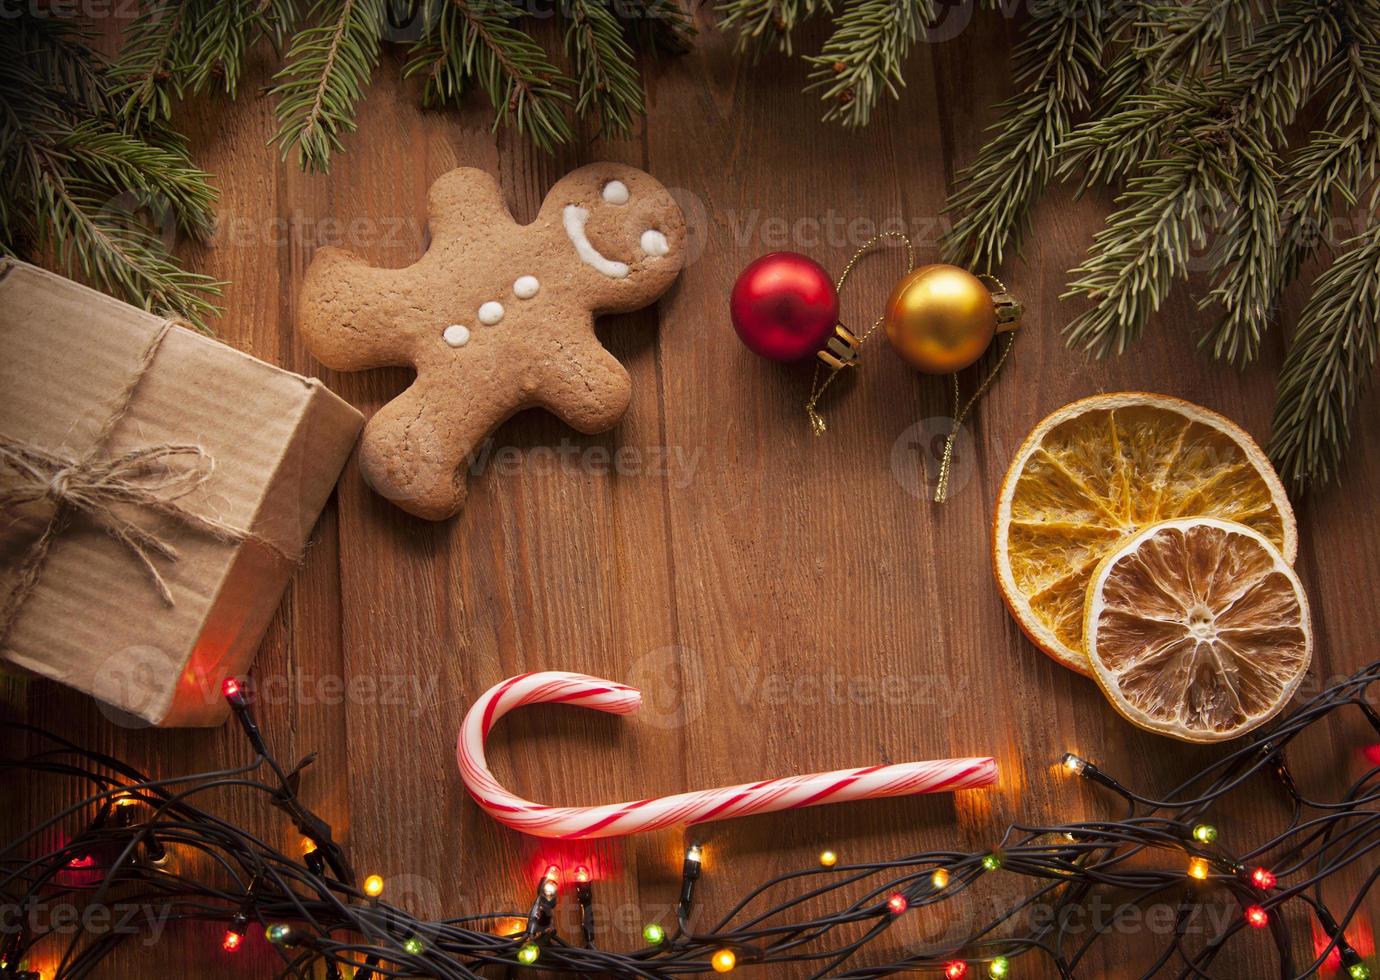 arbre de Noël en pain d'épice et cadeaux sur table photo